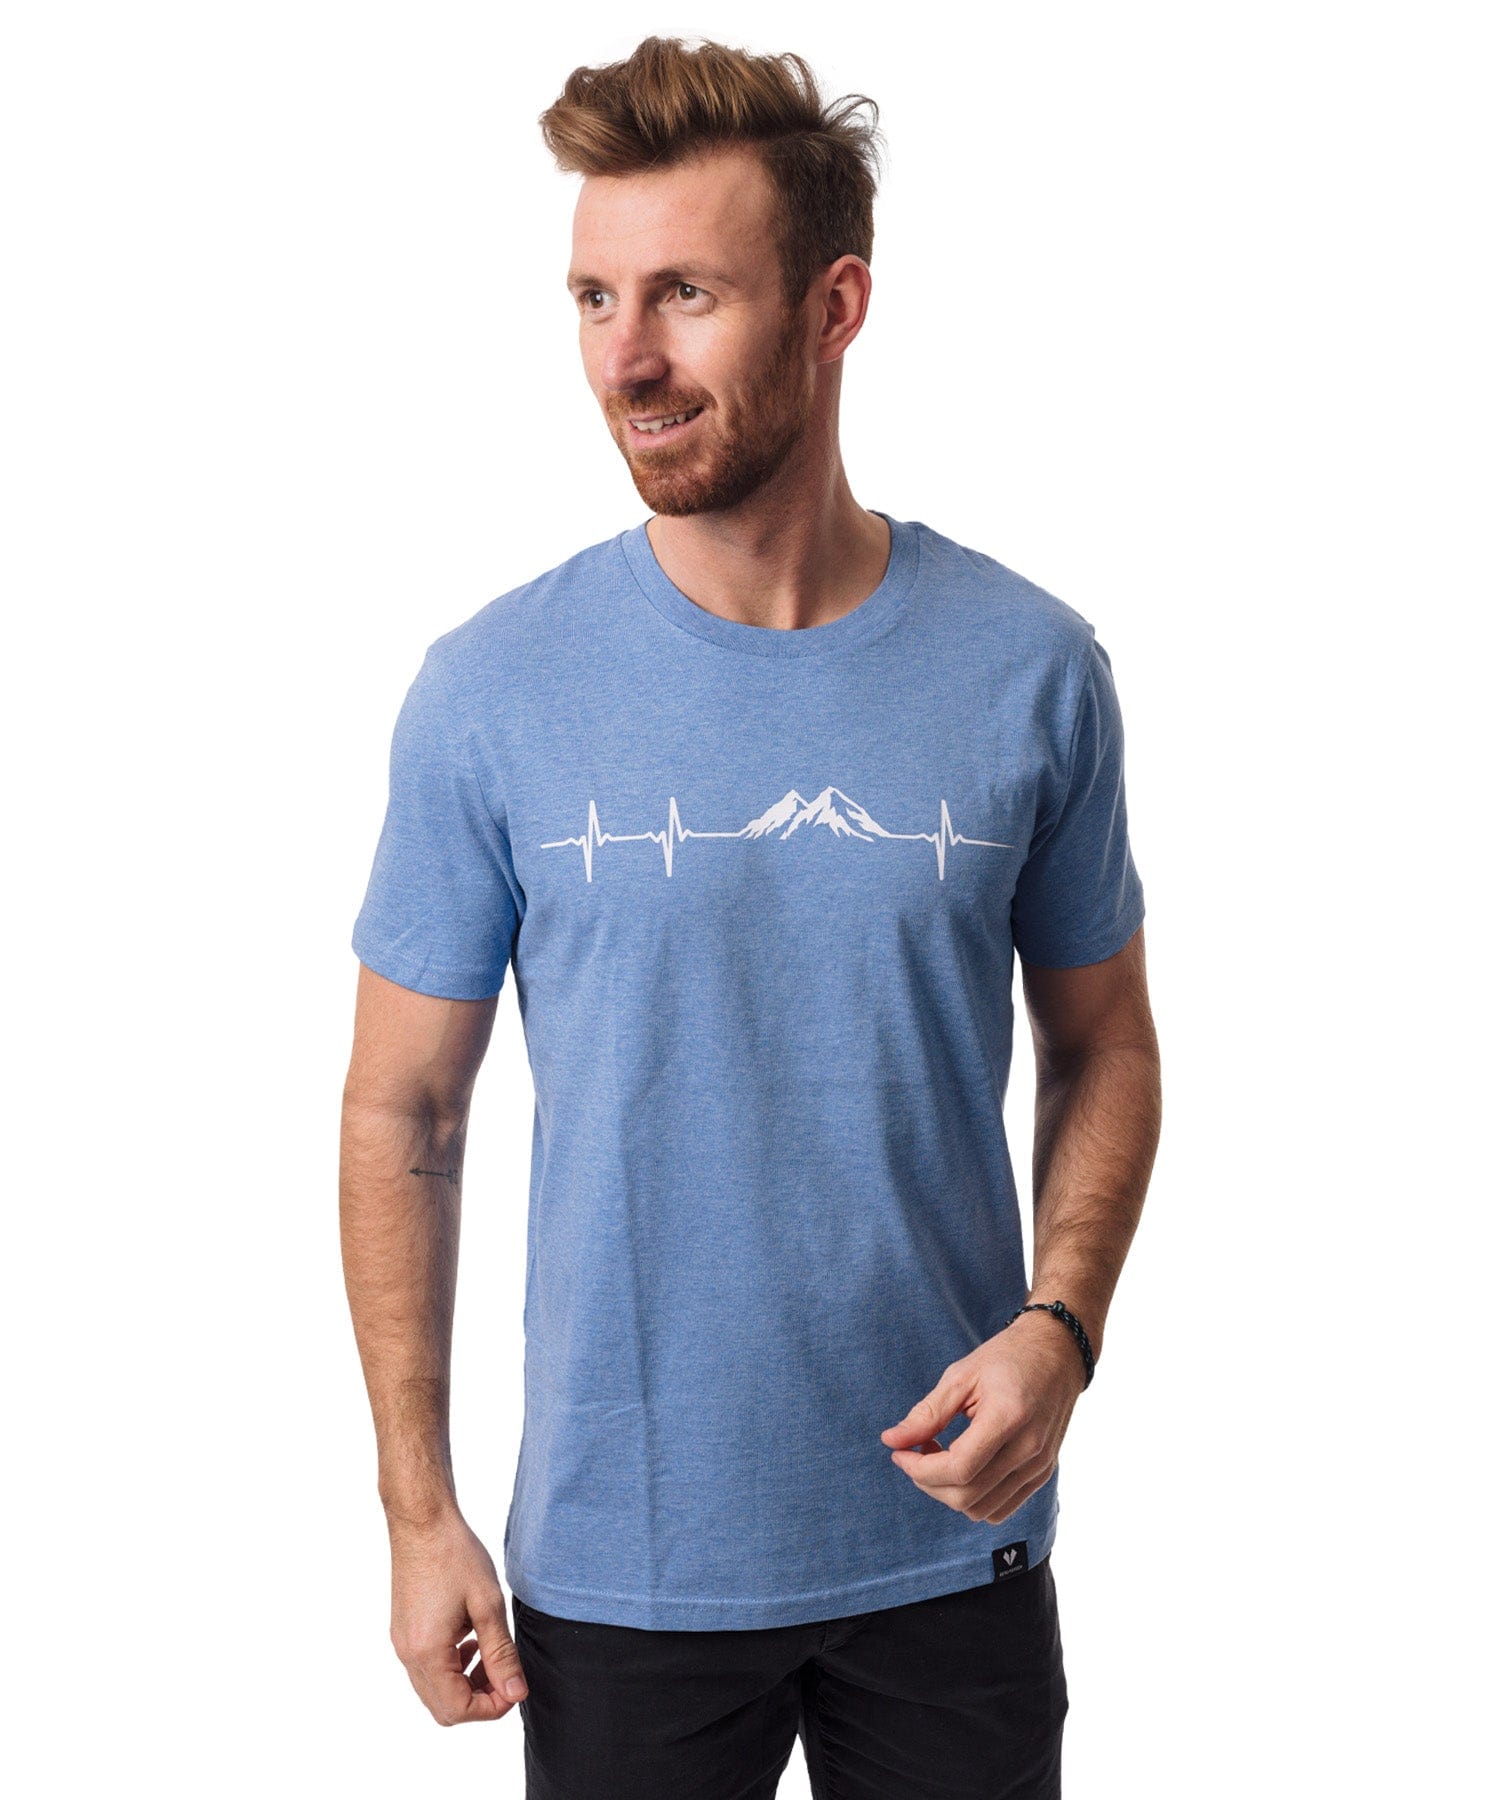 Herzschlag Berge - Unisex Premium Organic Shirt von Bergmensch